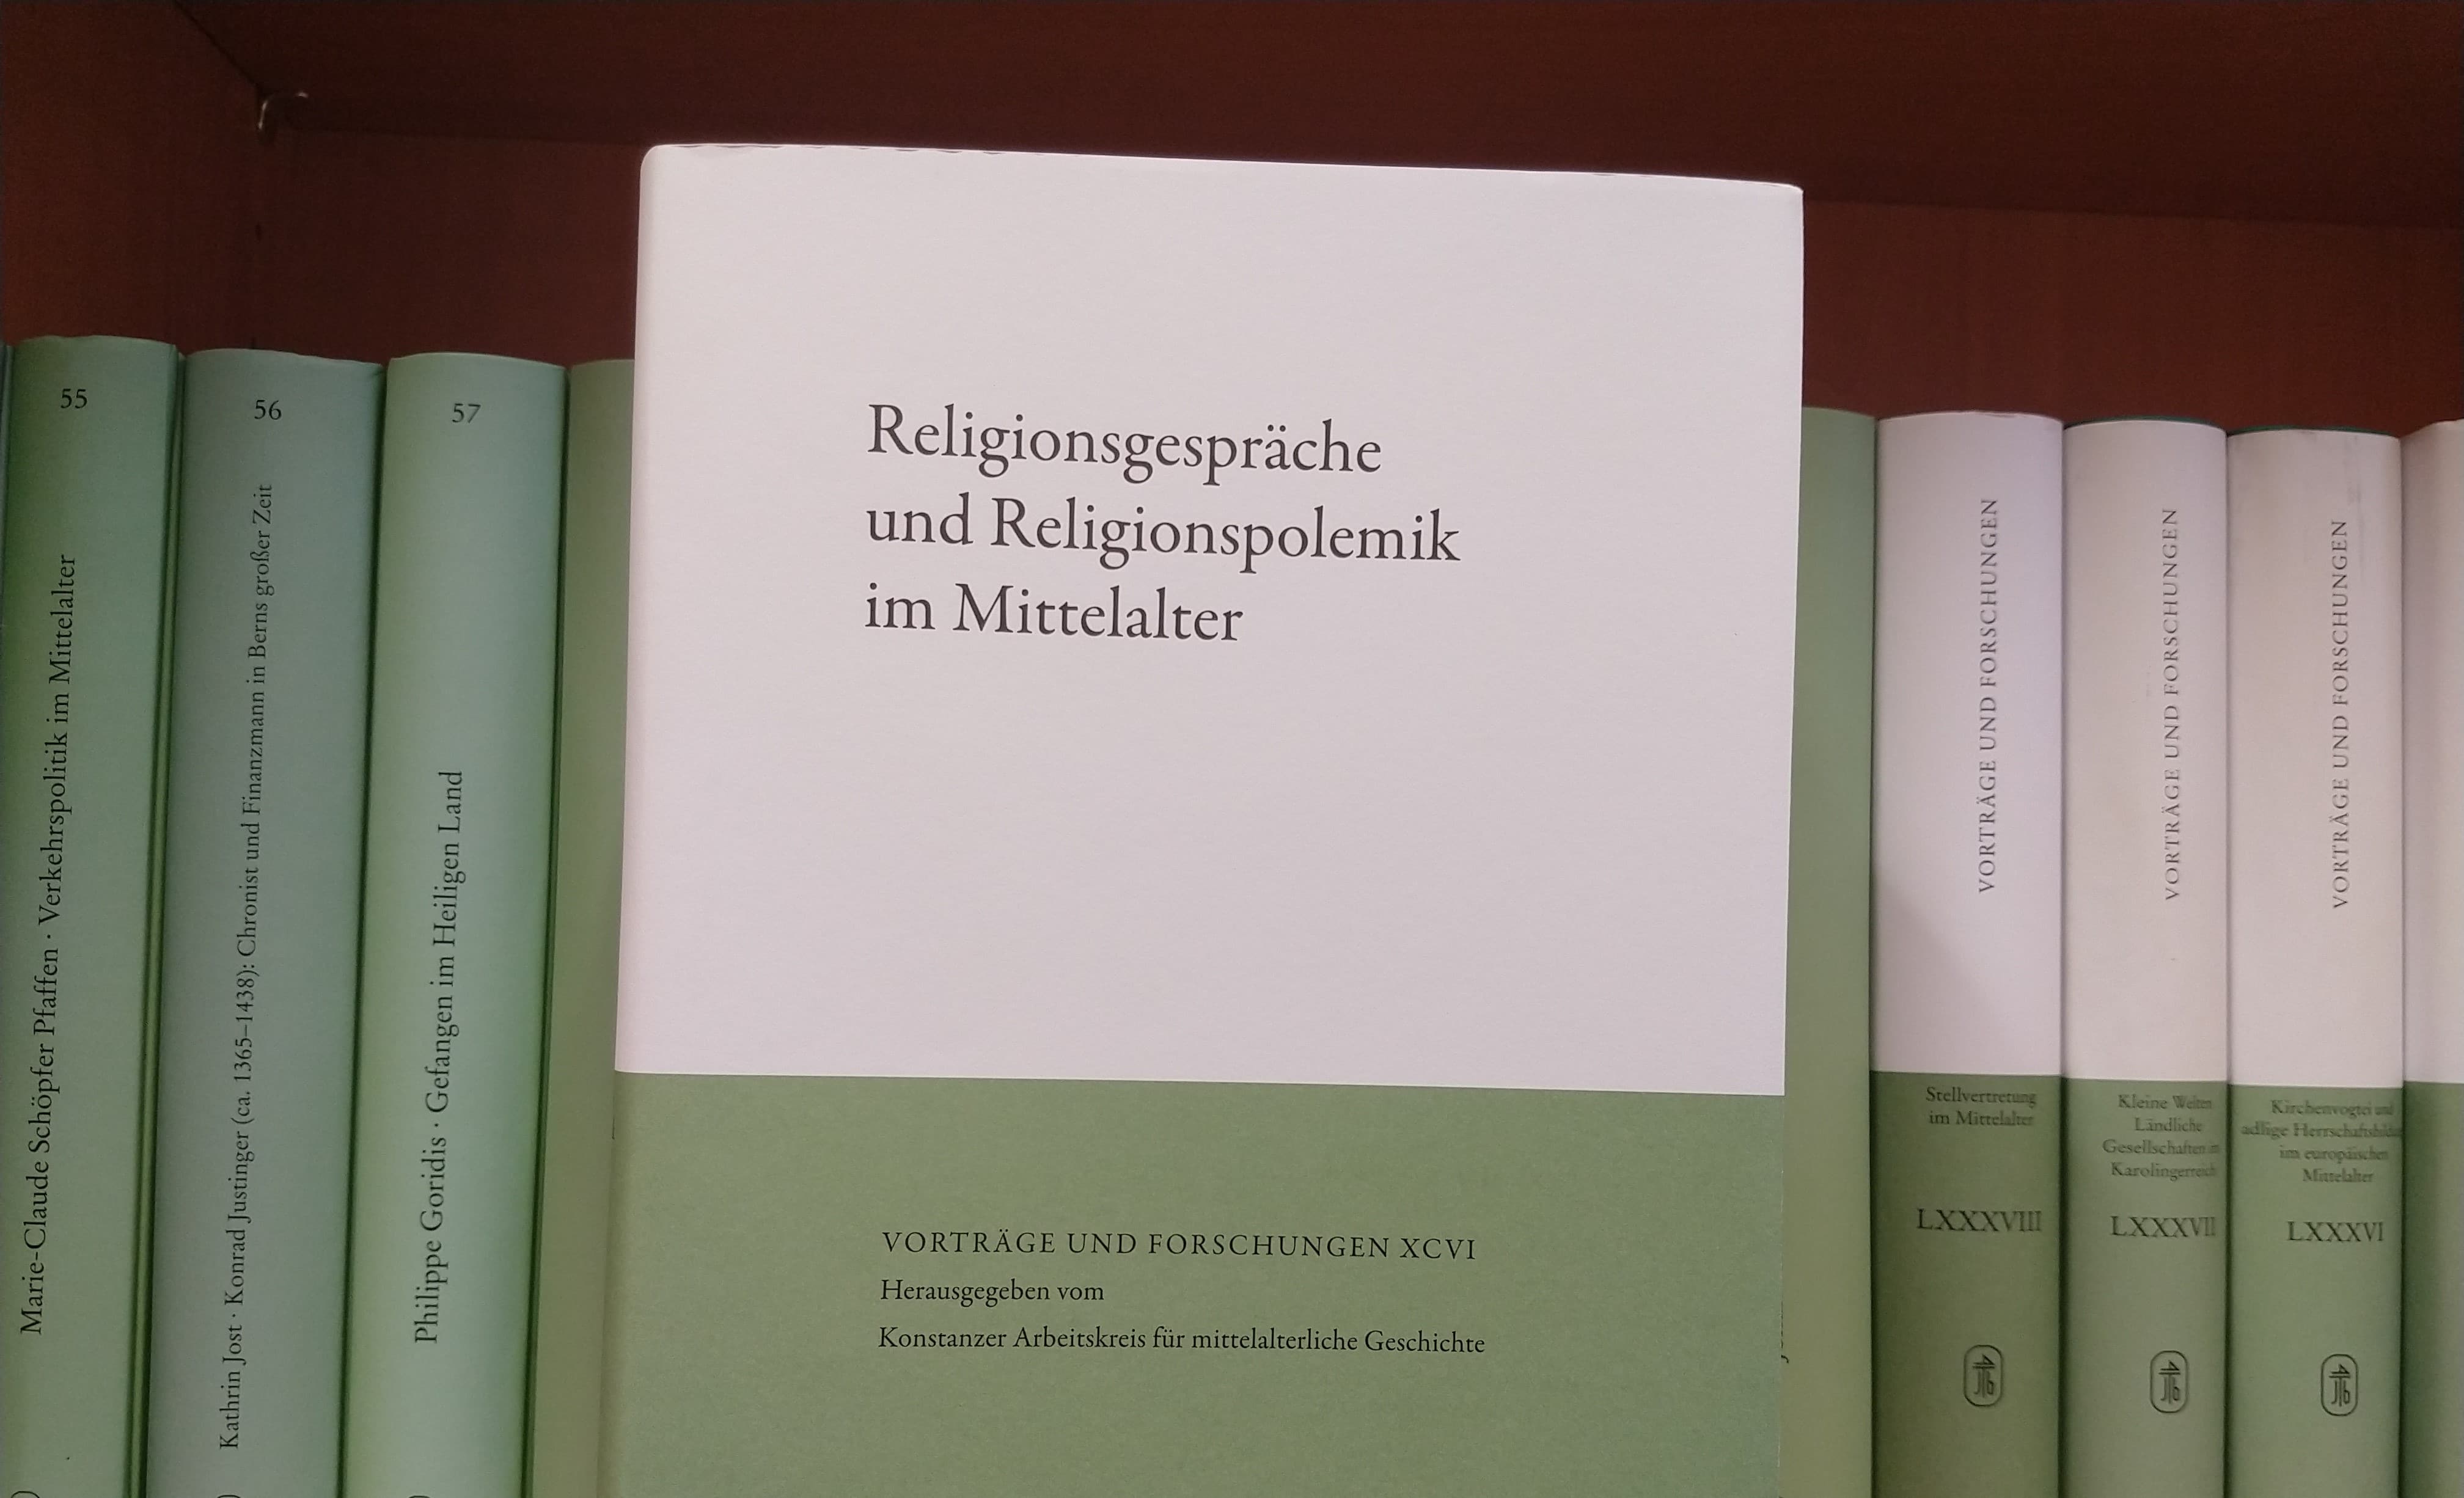 <p>Der Band mit dem Titel »Religionsgespräche und Religionspolemik im Mittelalter« wurde von Christine Reinle herausgegeben und geht auf eine Tagung des Konstanzer Arbeitskreises vom Herbst 2019 zurück.</p>
